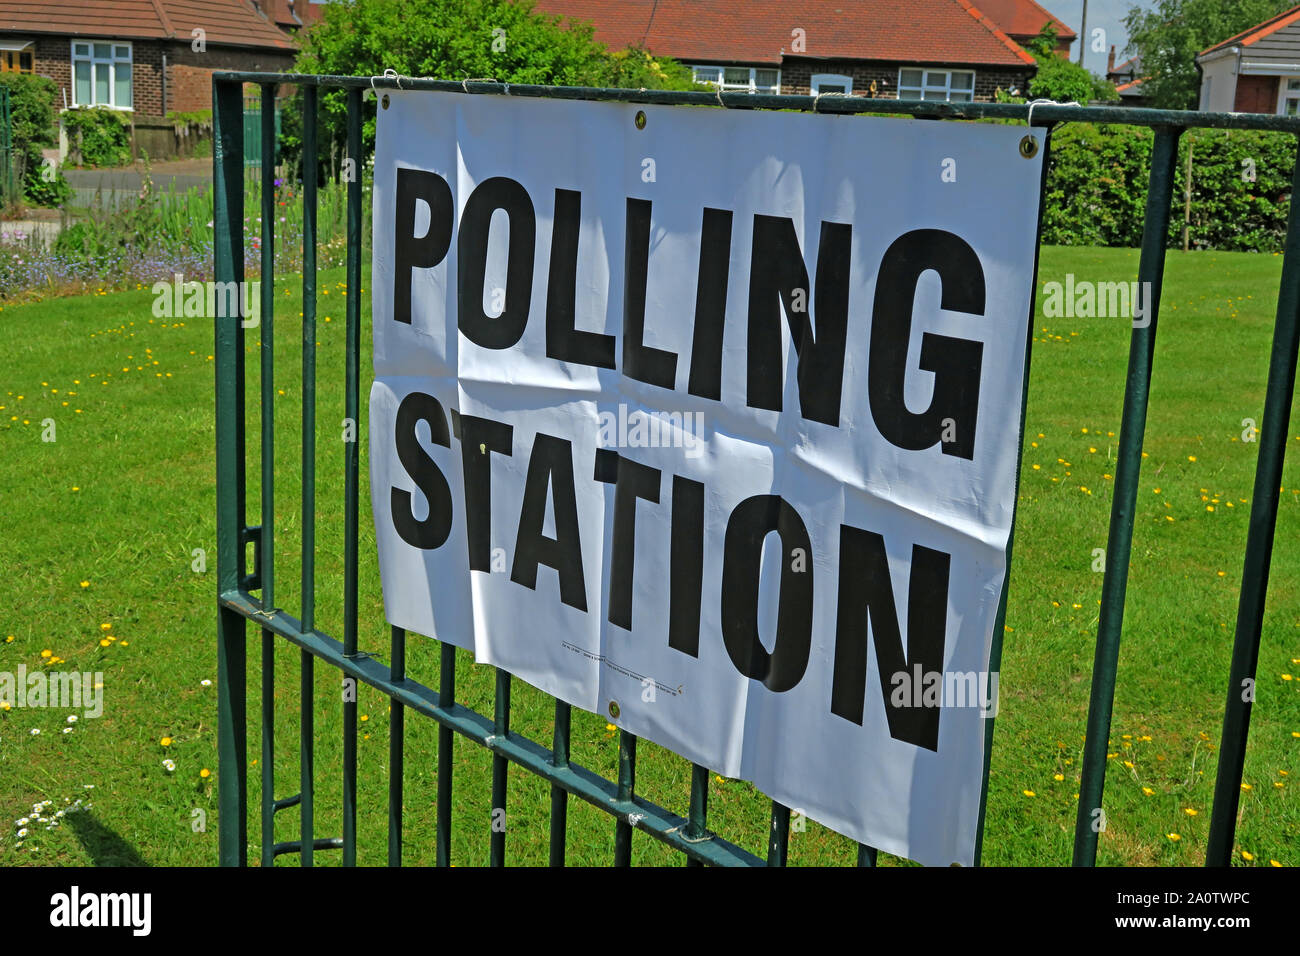 Lokale und Westminster Wahlen Wahllokal in einem Gebäude der Bibliothek, Victoria Avenue, Grappenhall, Warrington, Cheshire, England, Großbritannien Stockfoto